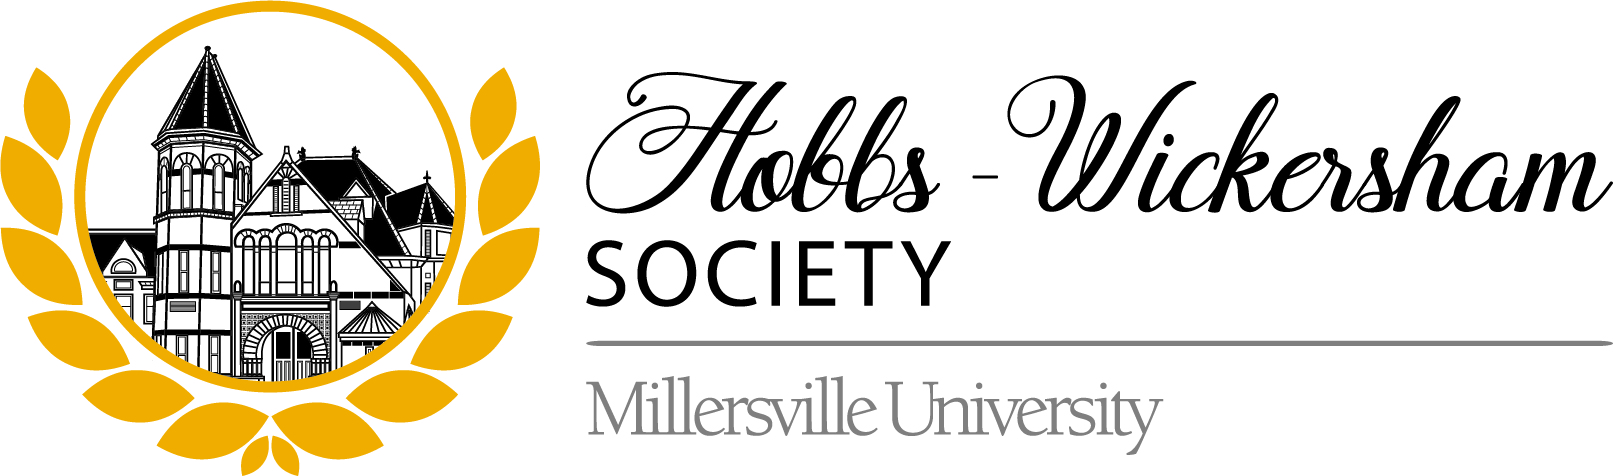 Hobbs-Wickersham Logo